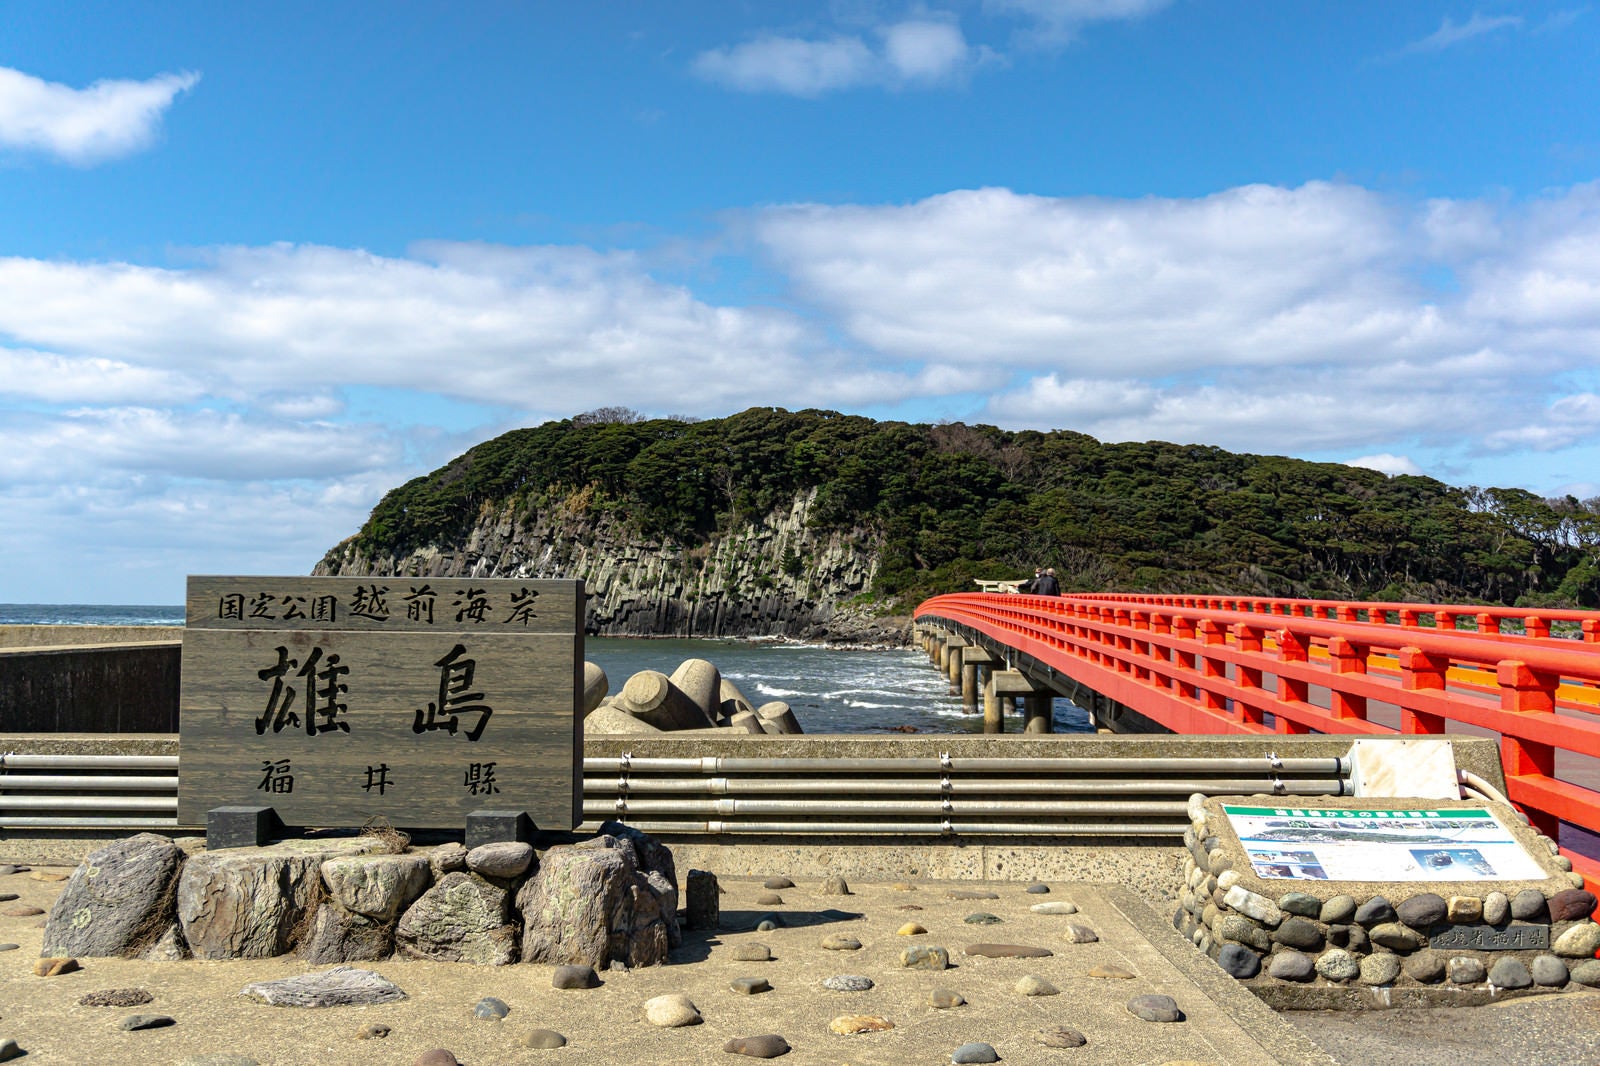 「雄島を背景に建つ雄島の看板や説明図と雄島へと続く橋」の写真